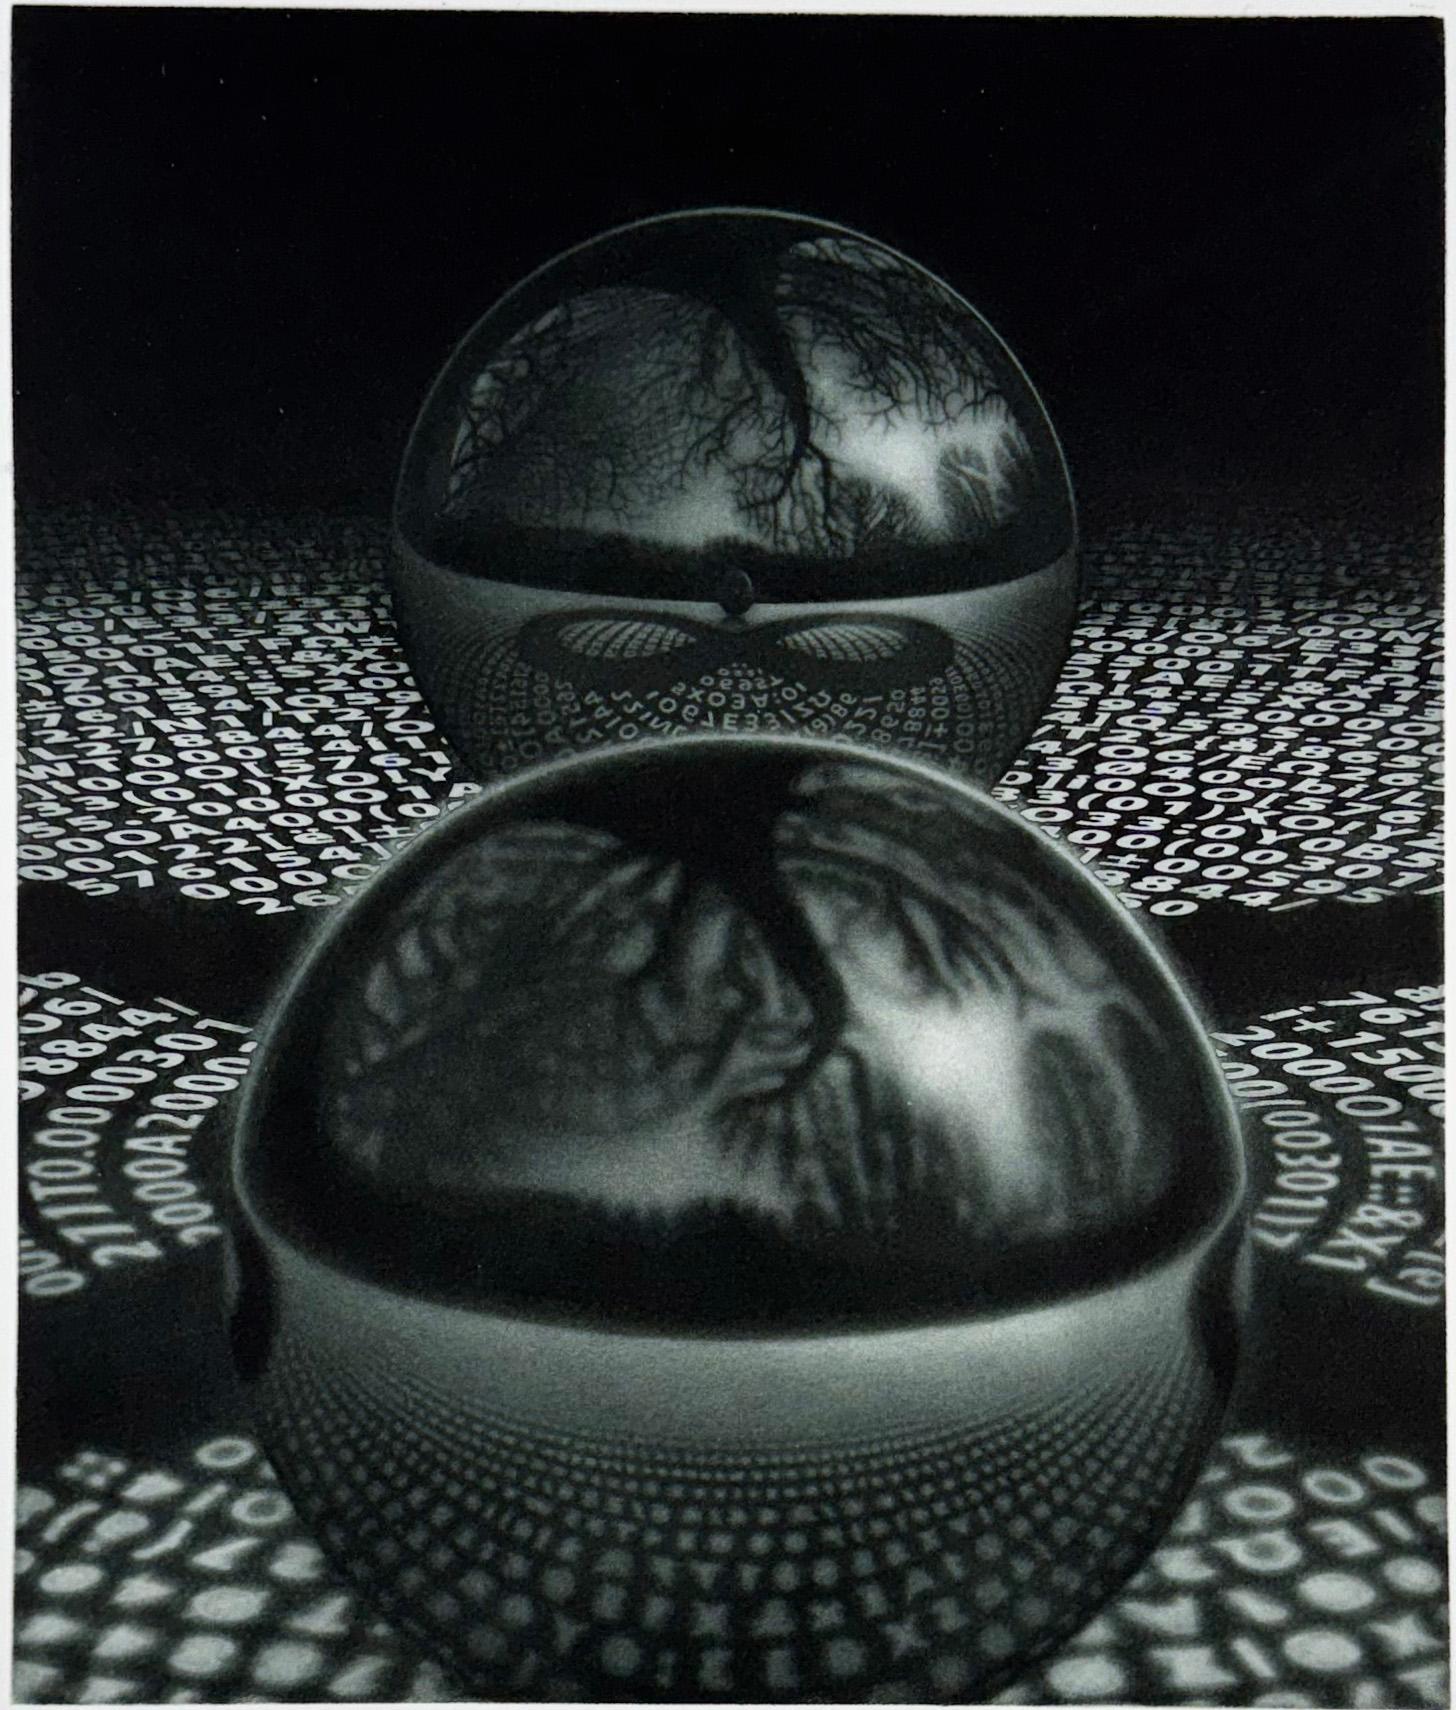 Médium : mezzotinte avec aquatinte
Année : 2015
Edition : 35 exemplaires, signés au crayon.
Taille de l'image : 10.25 x 8.66 pouces

Les illusions et les reflets surréalistes des gravures d'A&M. rappellent souvent à I.C. Escher à l'esprit, mais ses